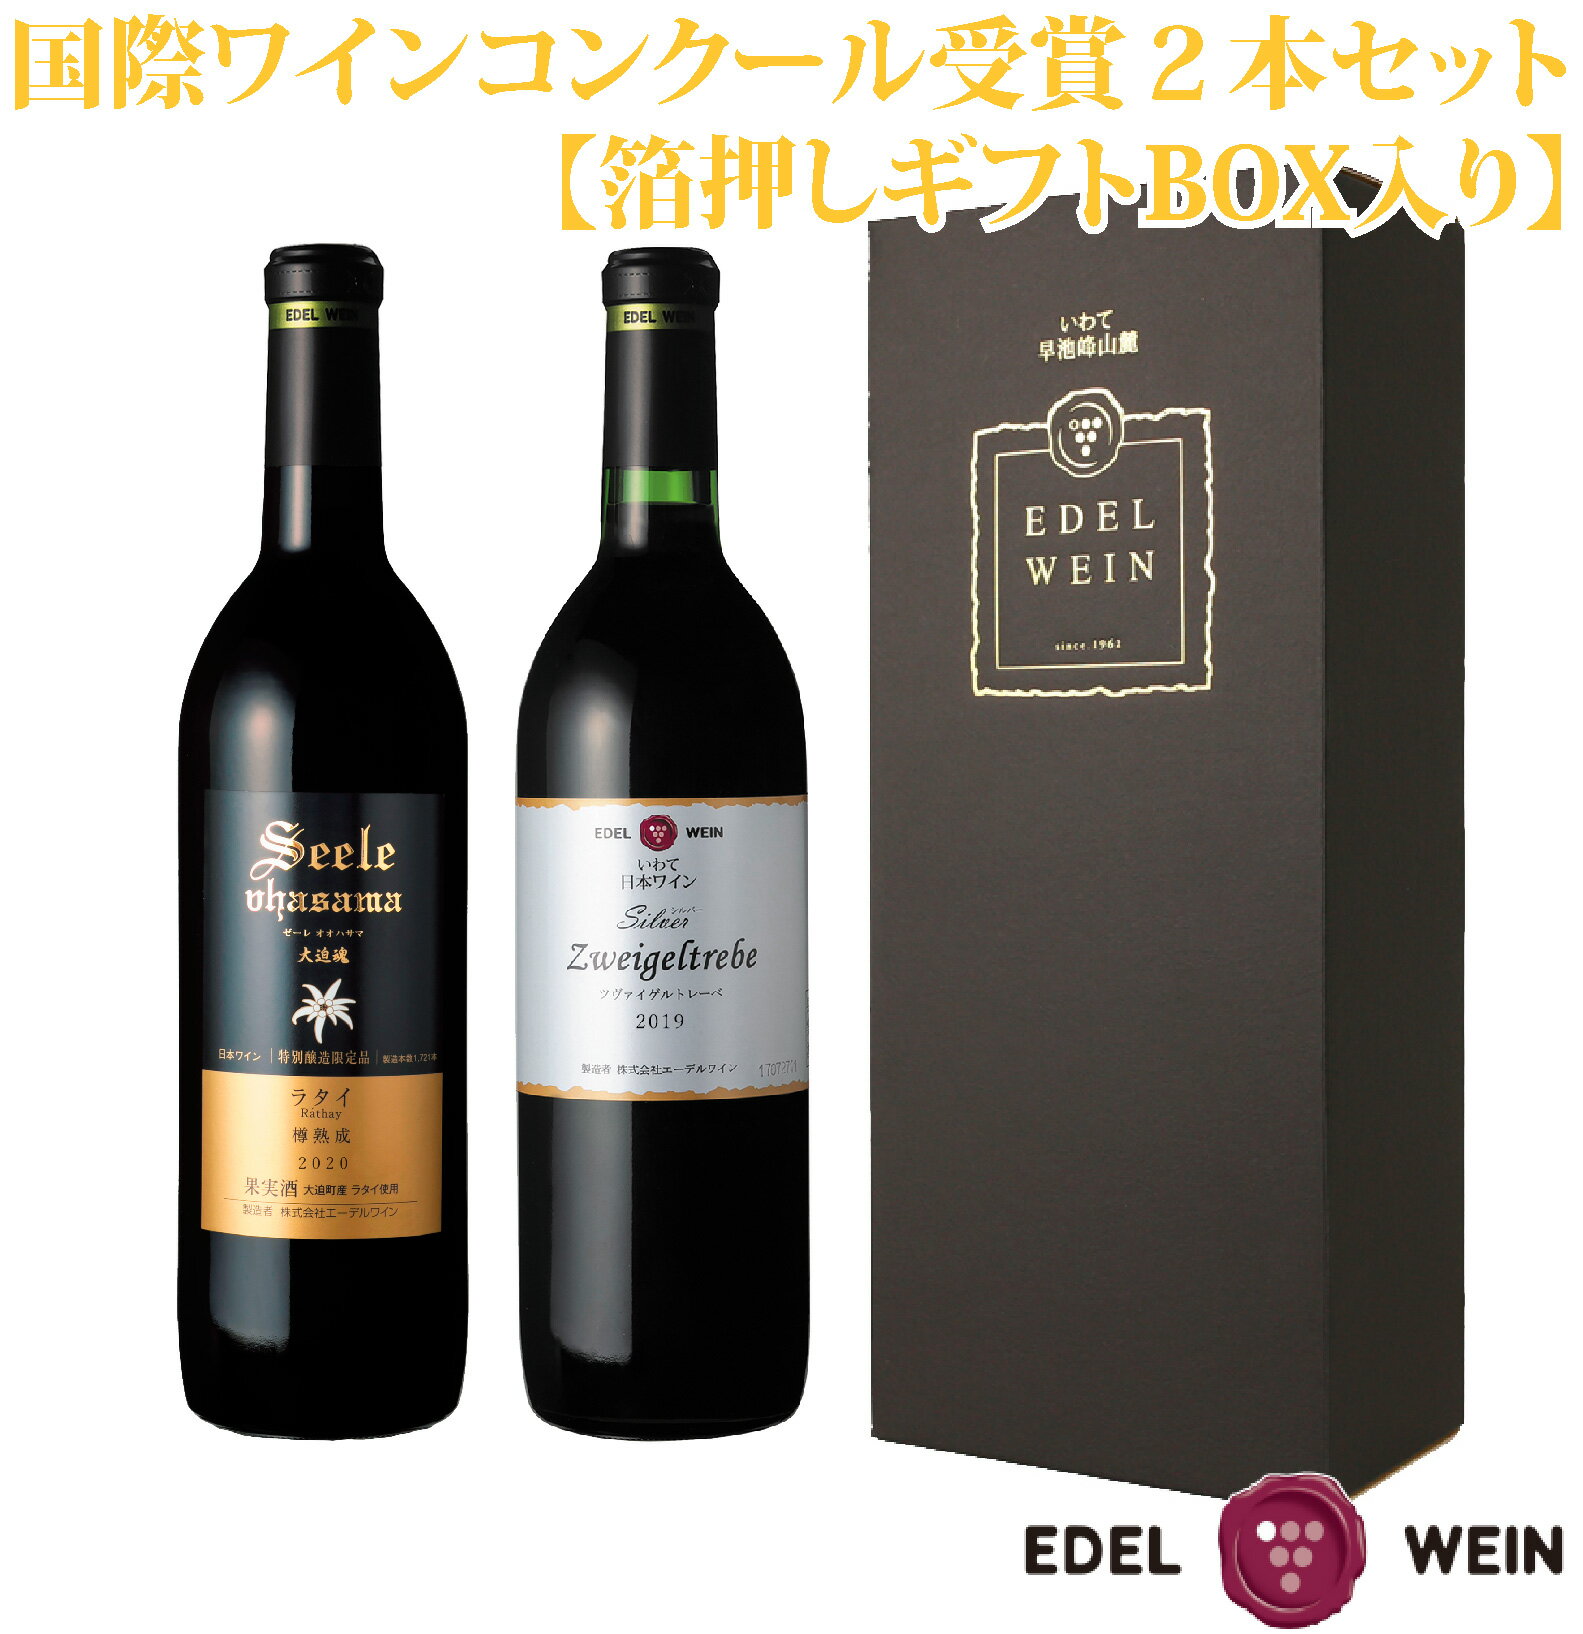 【ふるさと納税】国際ワインコンクール 受賞 赤ワイン 2本セ